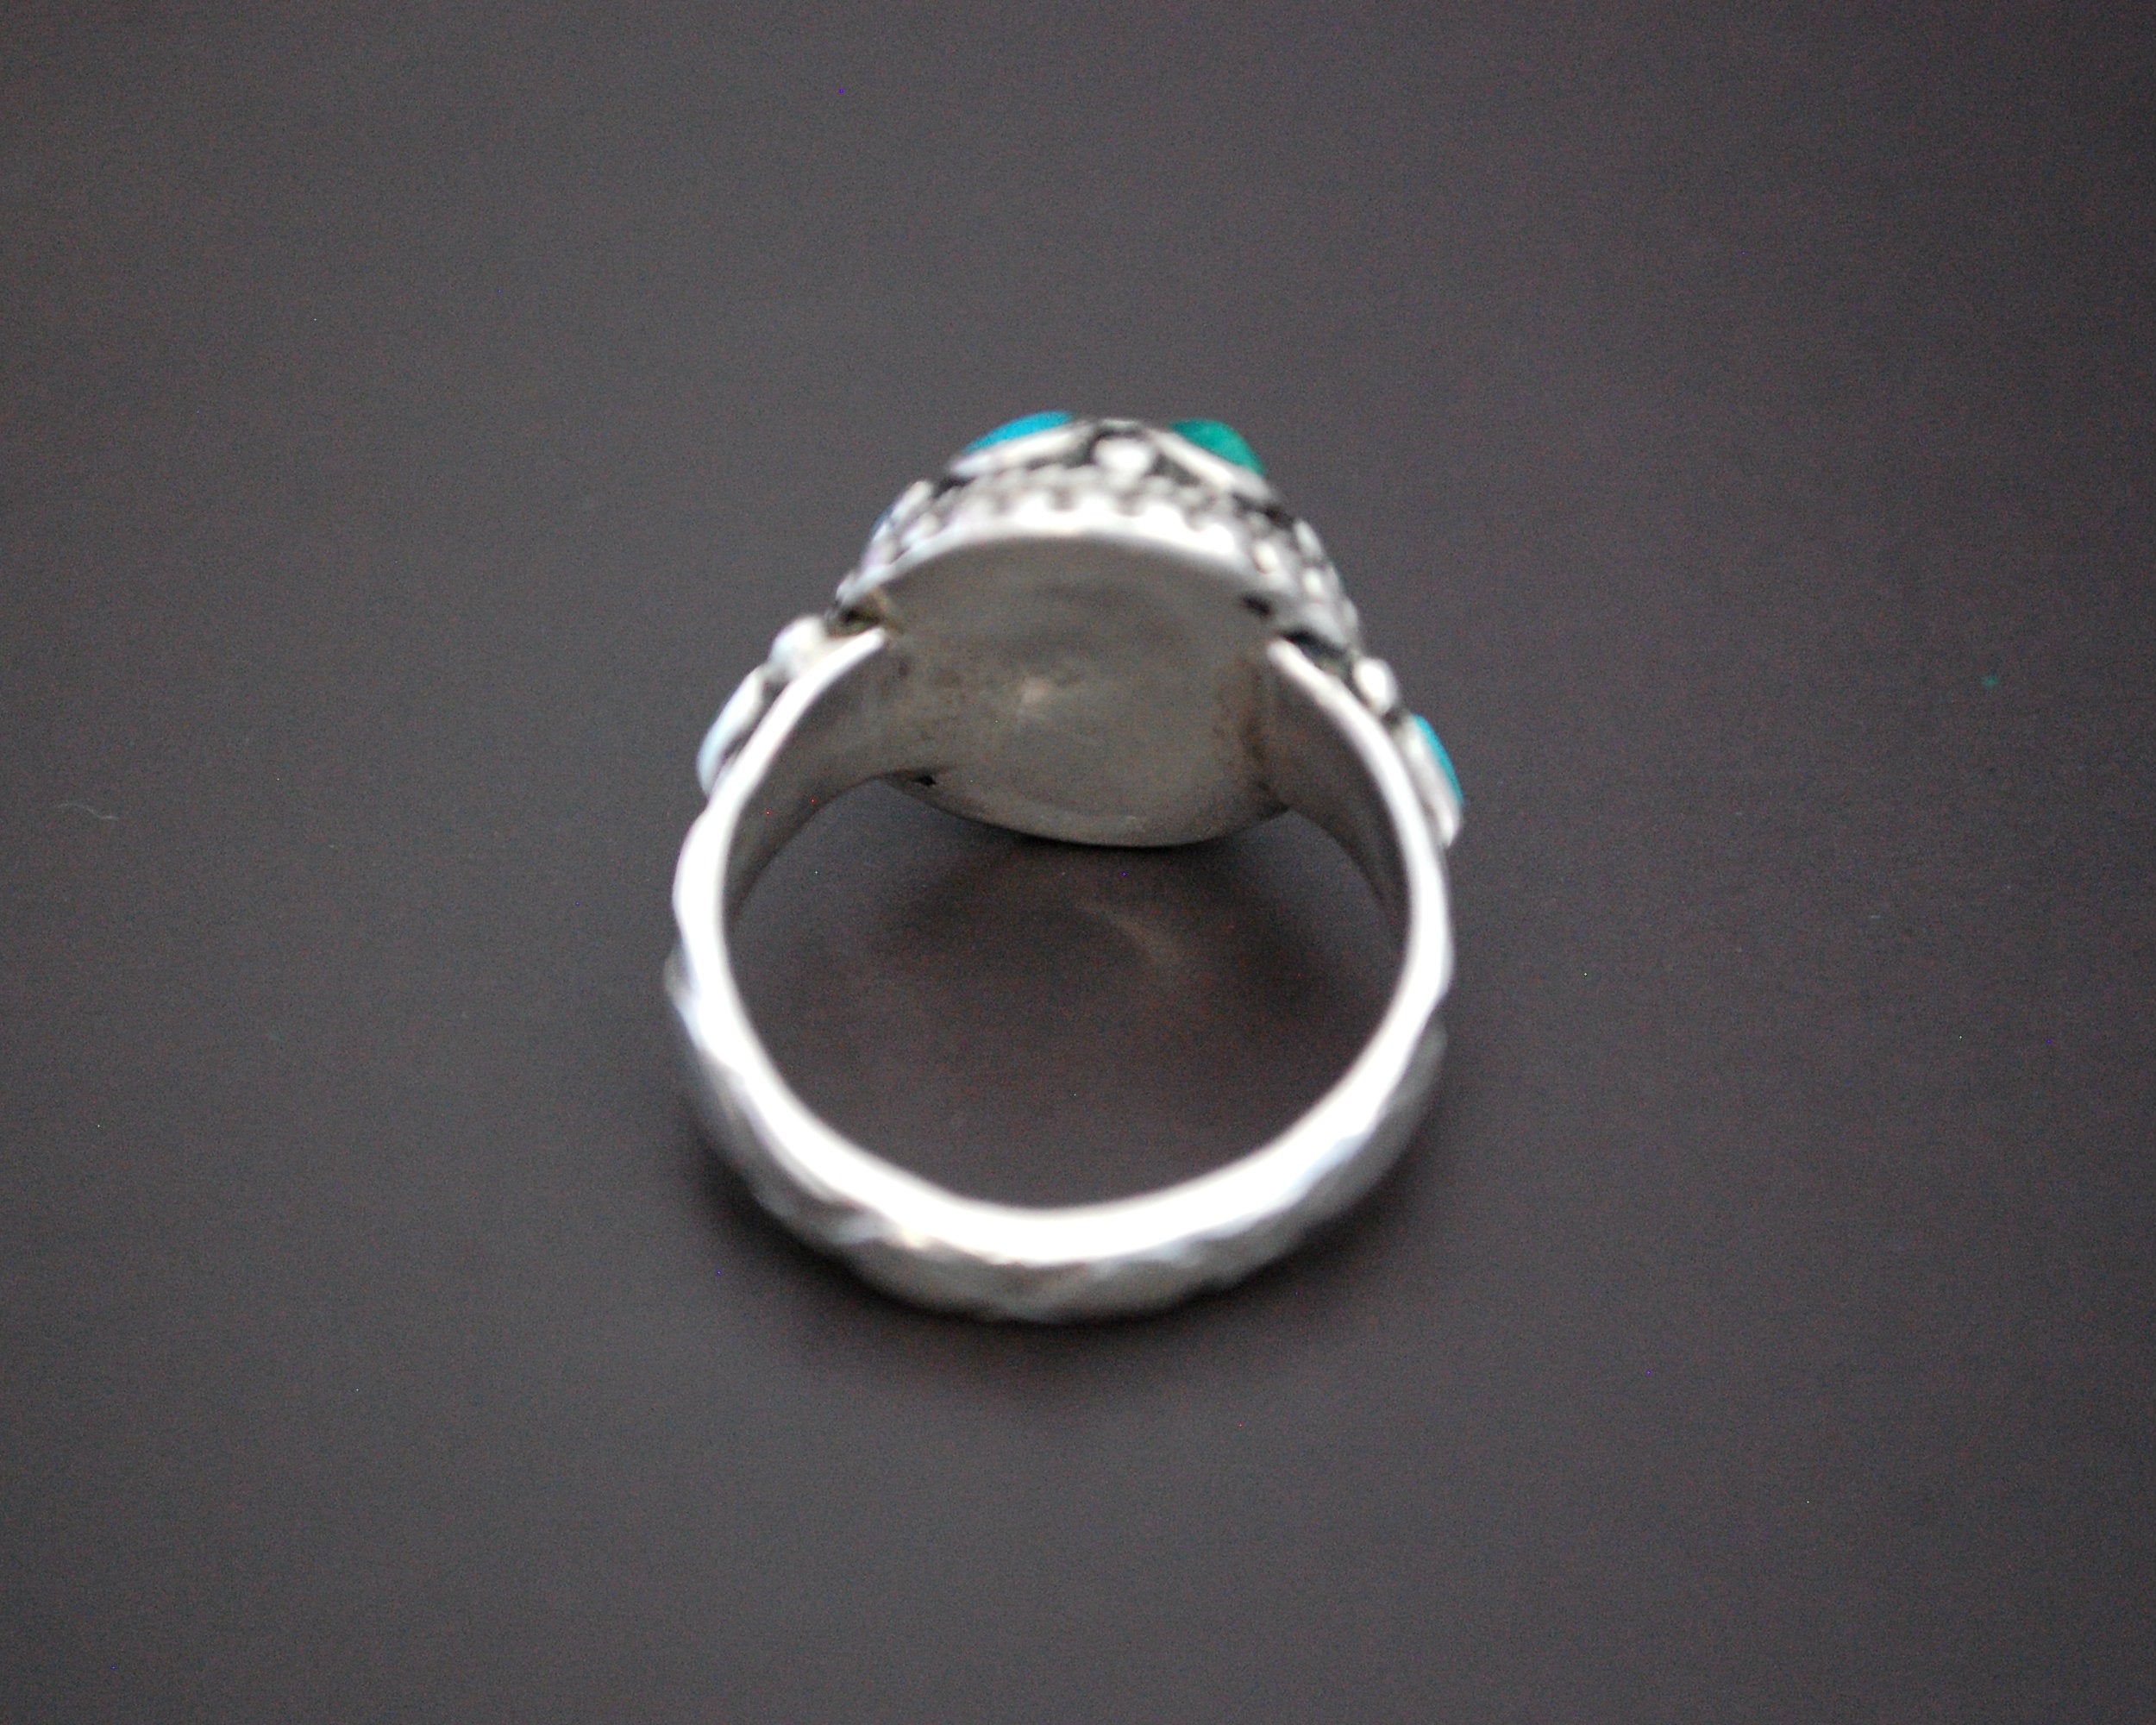 Ladakh Turquoise Ring - Size 8.5